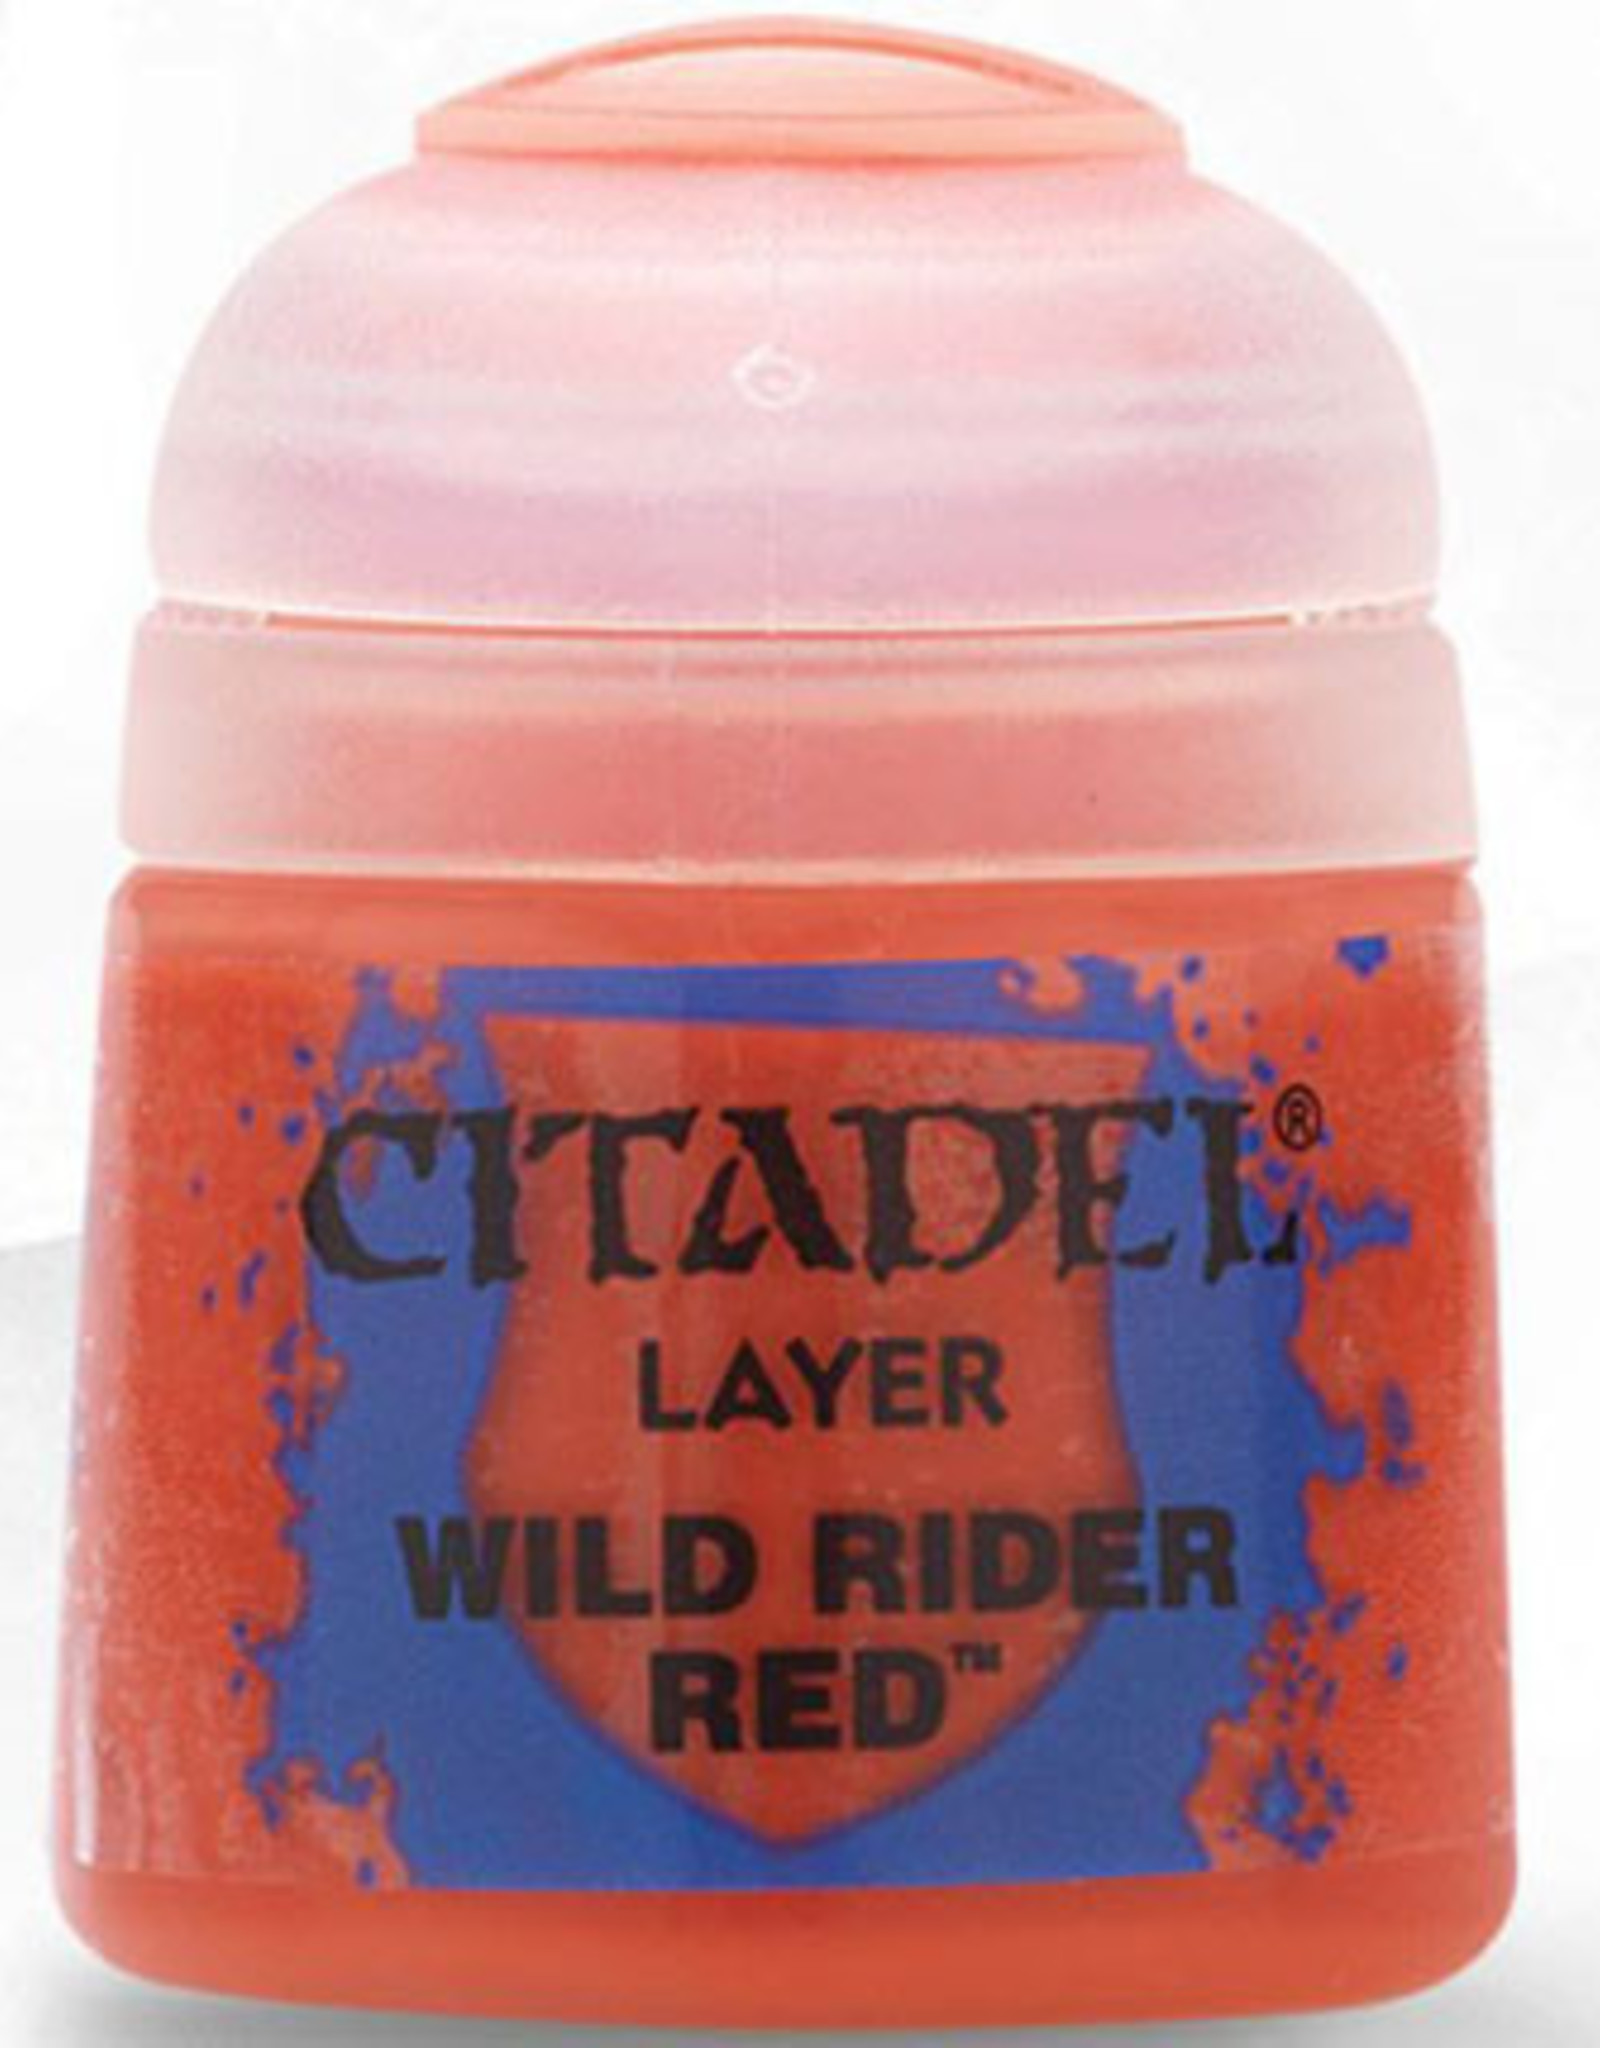 Games Workshop Citadel Layer: Wild Rider Red